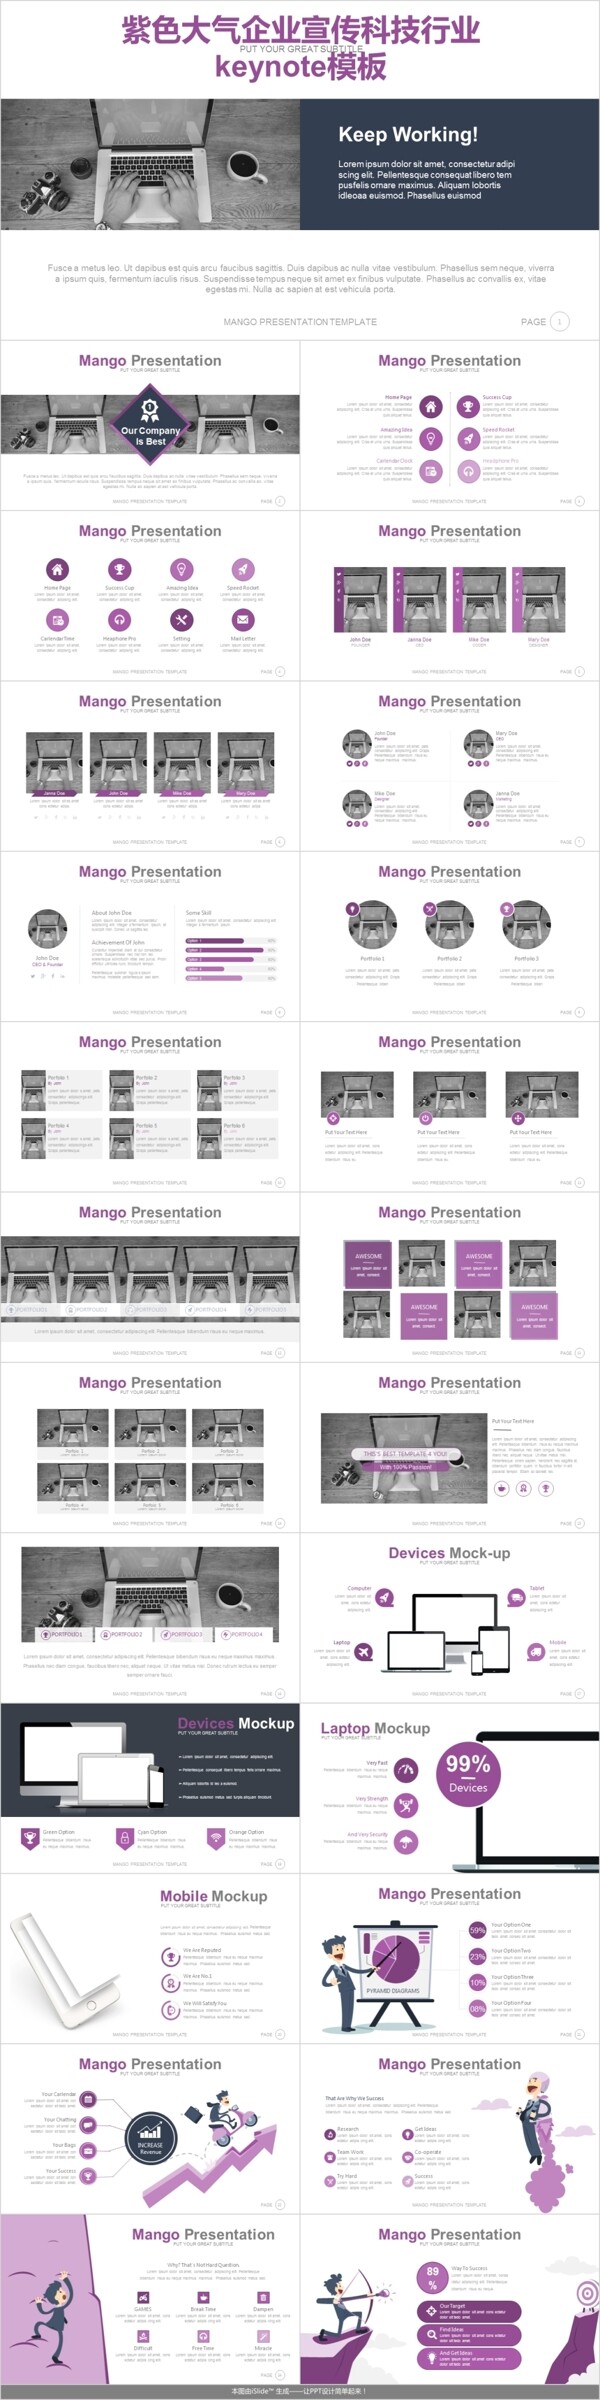 紫色大气企业宣传科技行业keynote模板